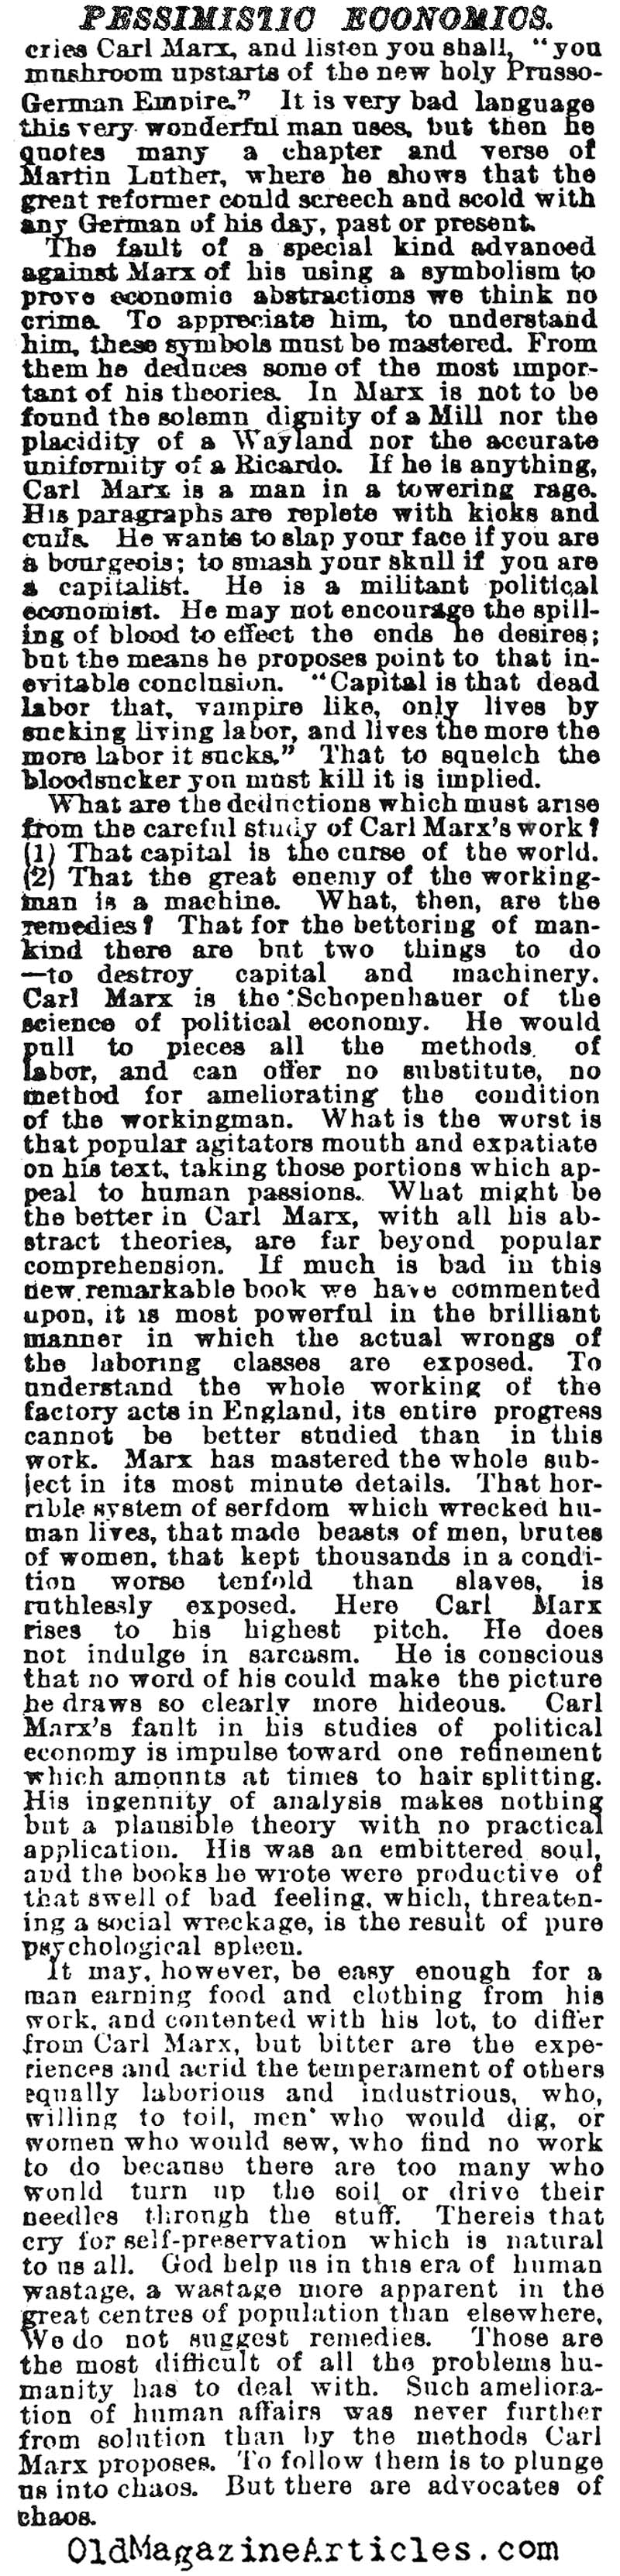 Karl Marx Reviewed (NY Times, 1887)